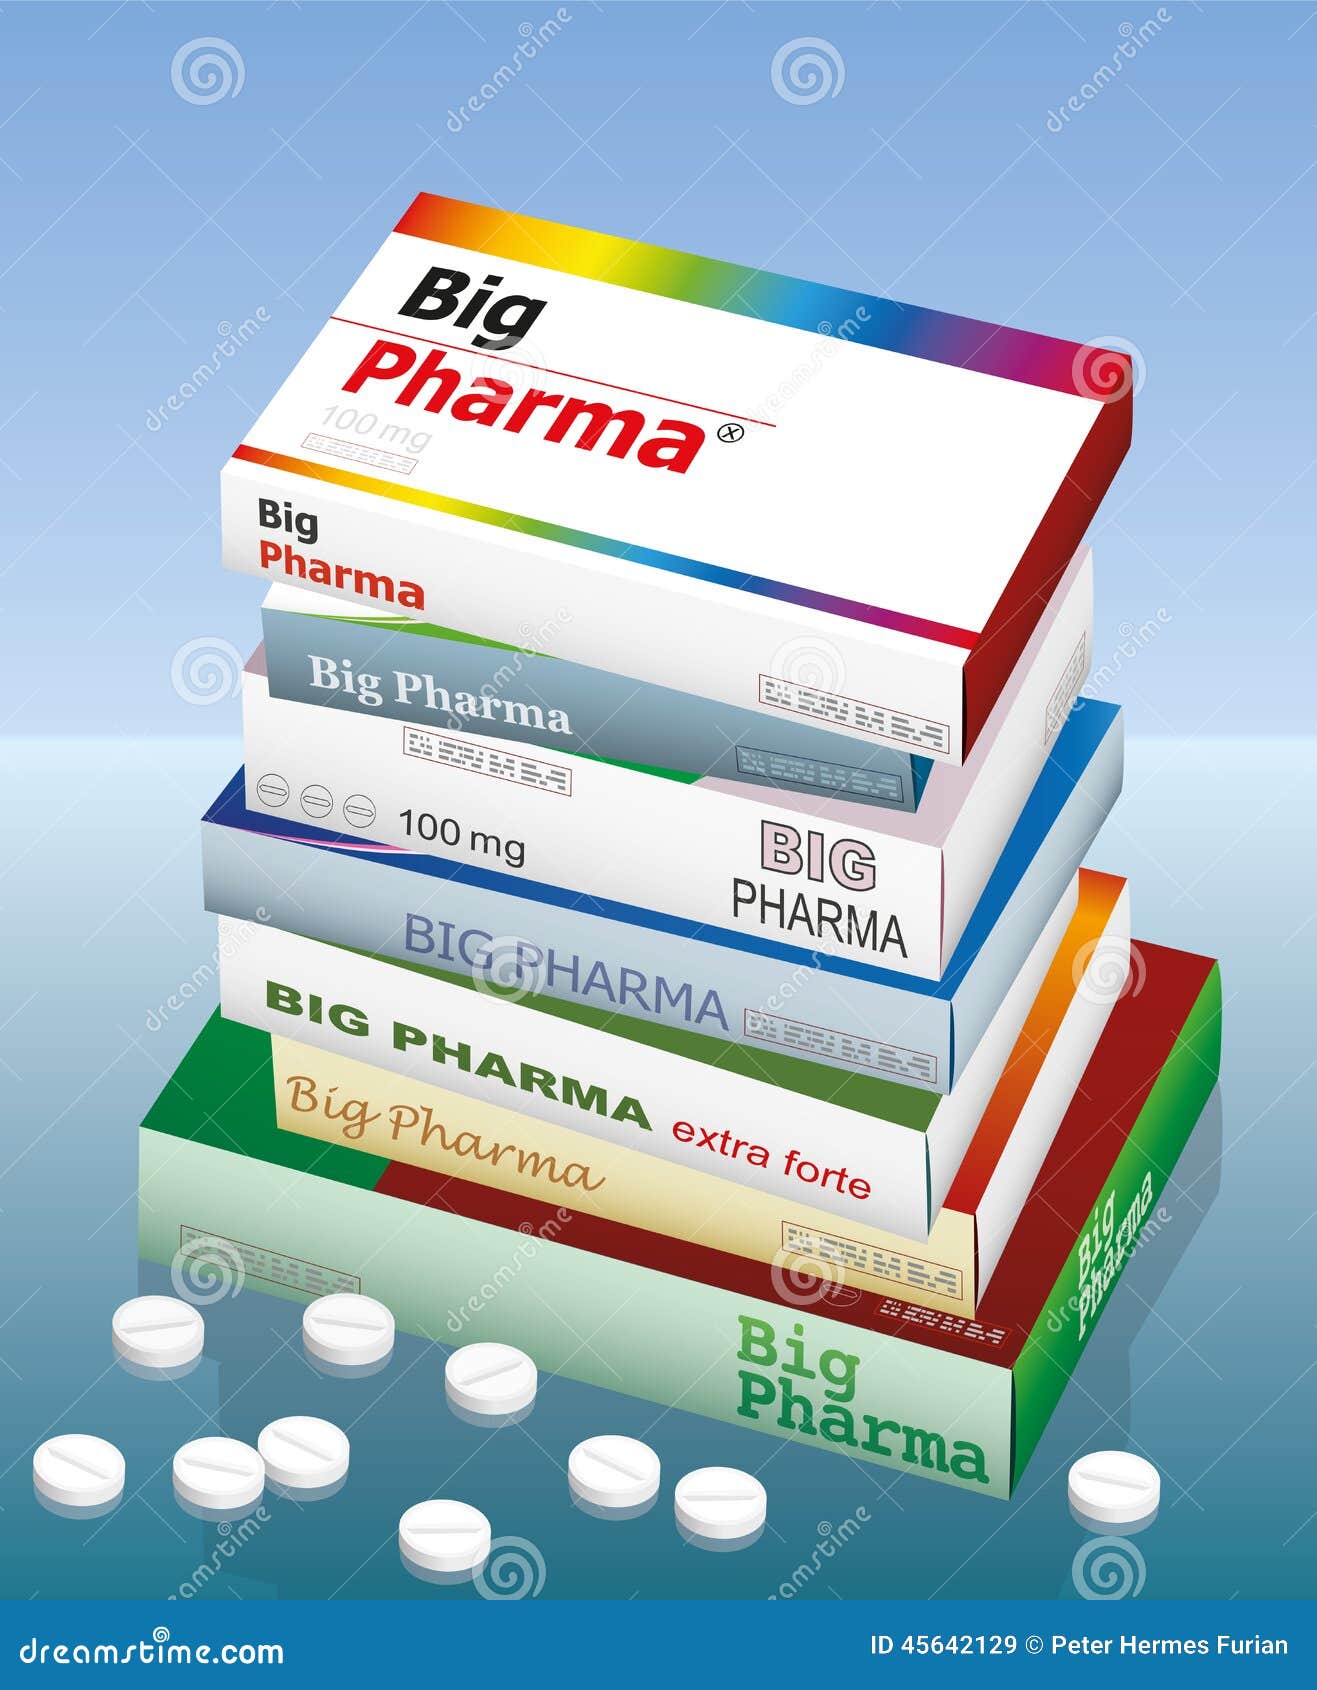 big pharma medicine